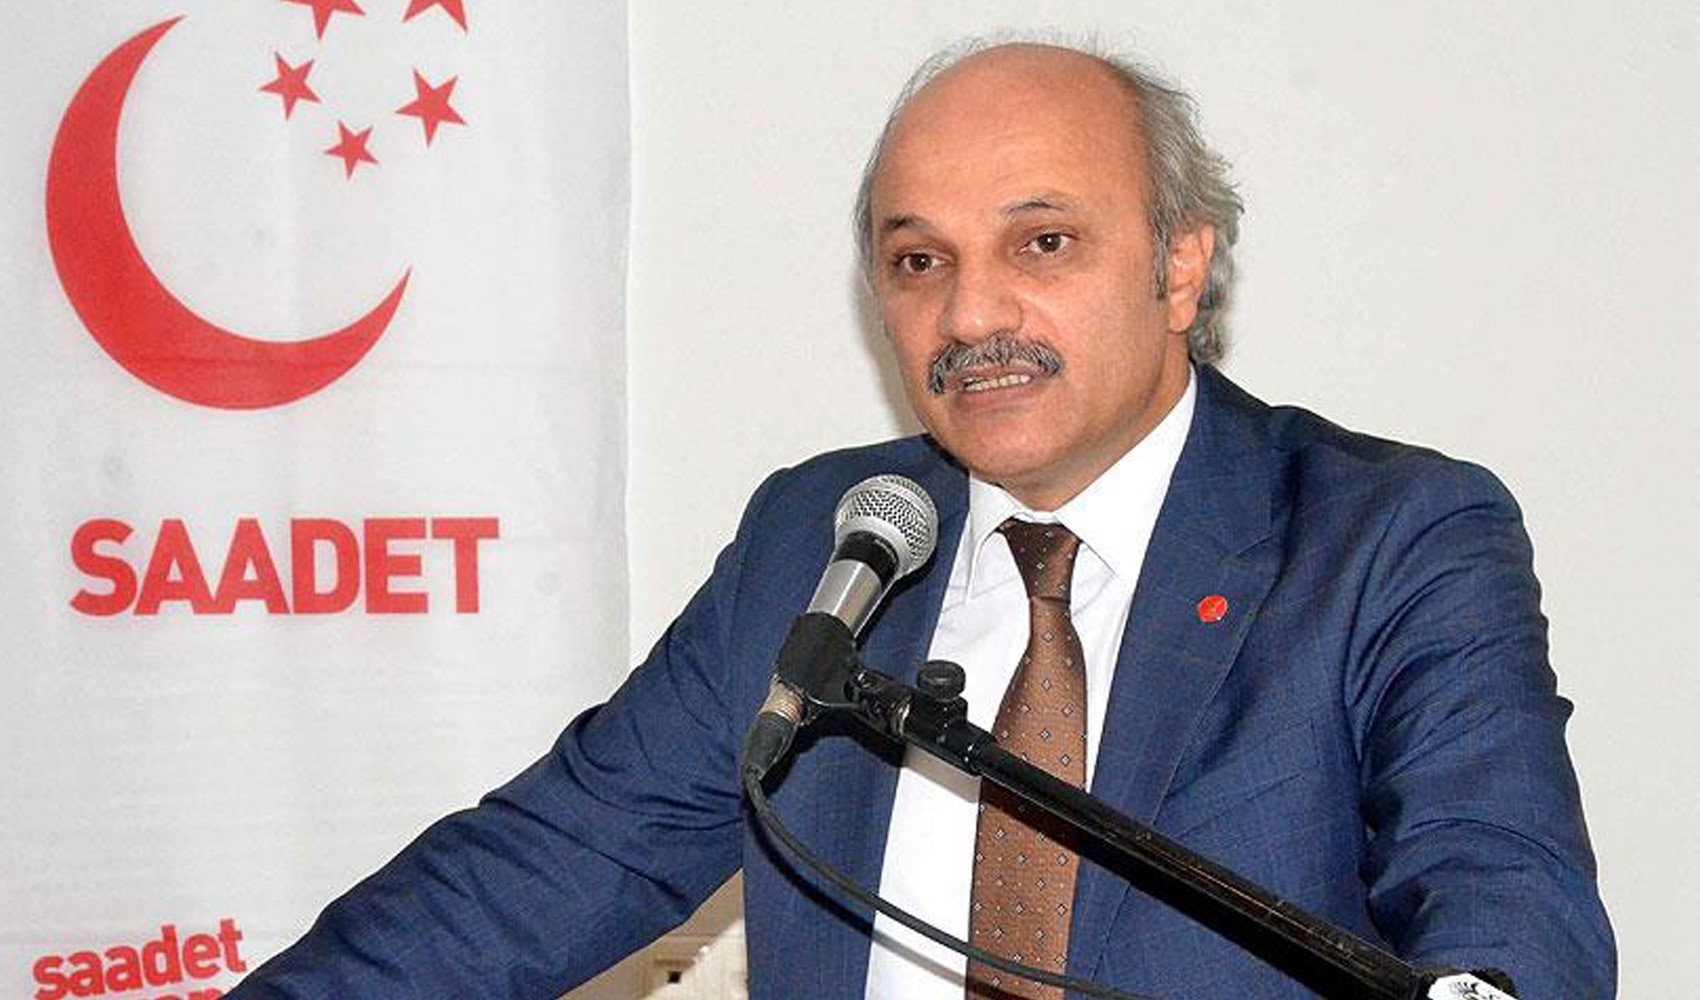 Saadet adayı Aydın'dan 'FETÖ' açıklaması: 'Operasyonları AKP'yle beraber çekmiyorlar mıydı?'